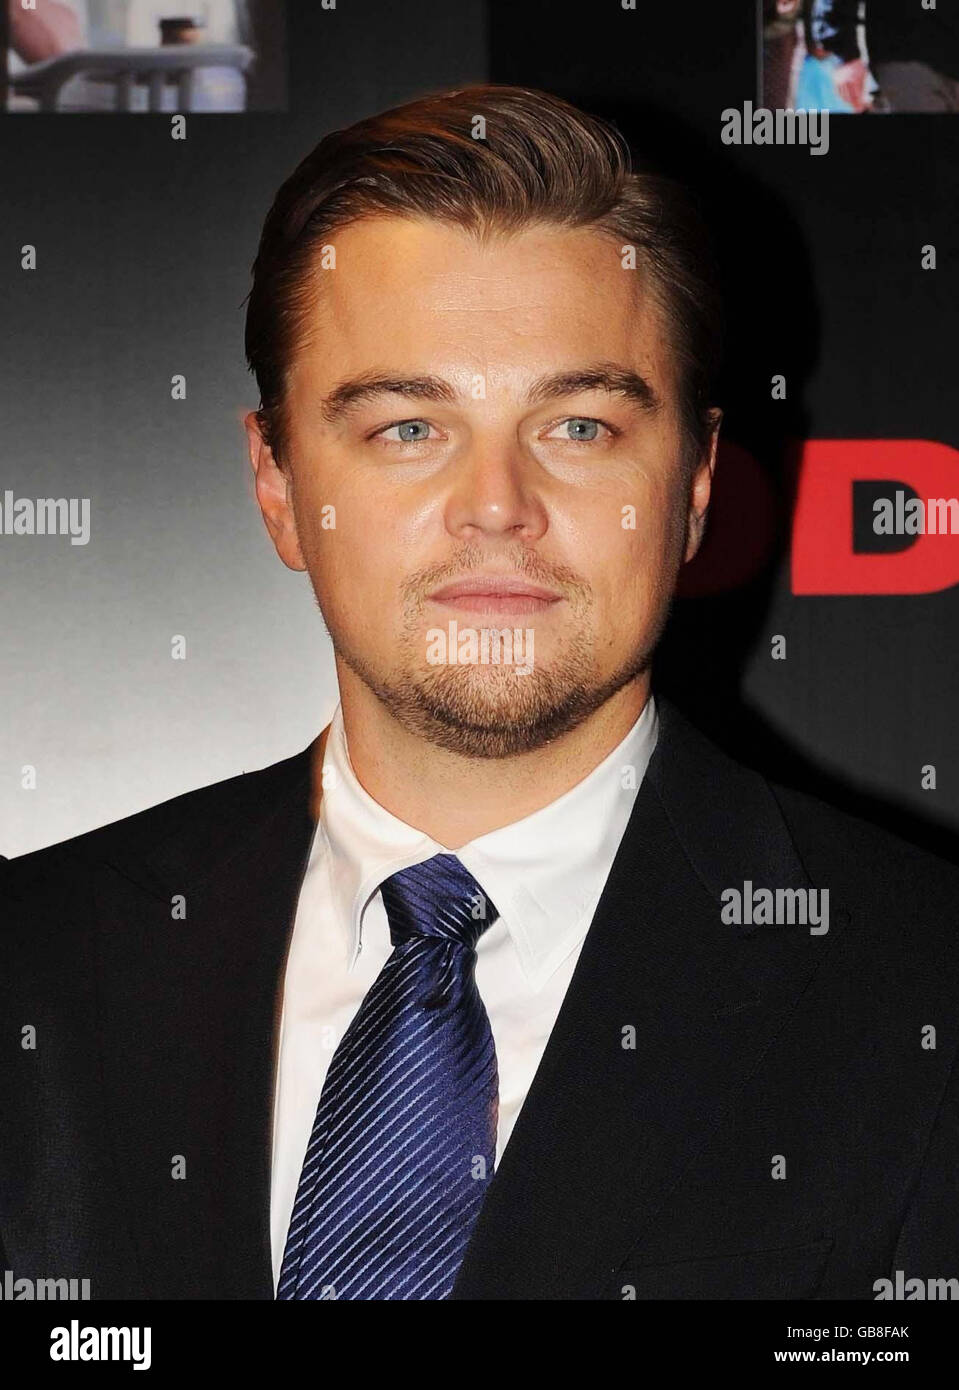 Britische Filmpremiere von „Body of Lies“ - London. Leonardo DiCaprio, bei der britischen Filmpremiere von „Body of Lies“ im Vue West End im Zentrum von London. Stockfoto